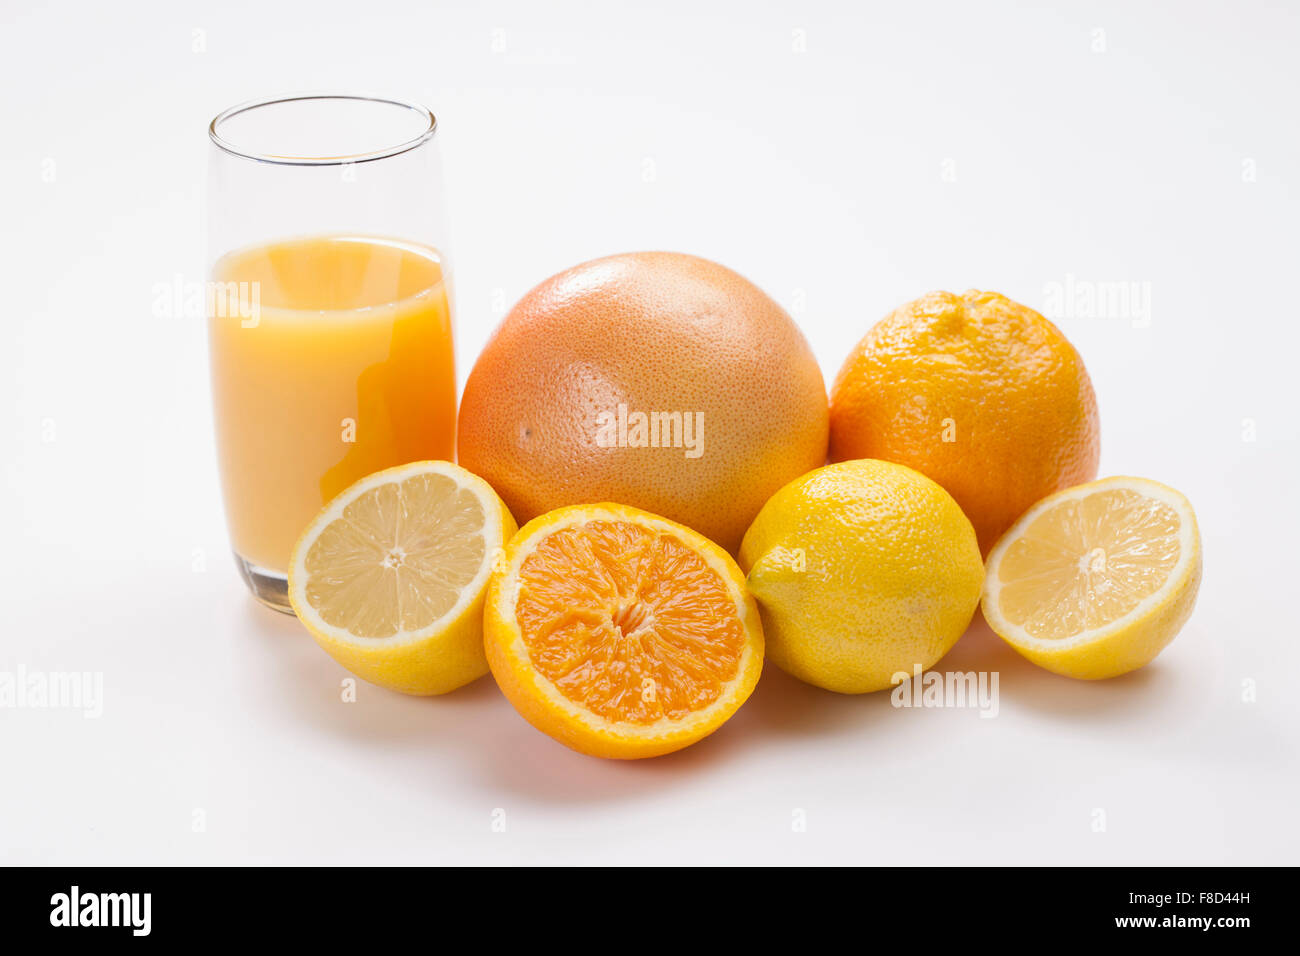 Arancio e giallo colore dei frutti tra cui pompelmo, Arancio, Limoni con un bicchiere di succo di frutta in colore arancione Foto Stock